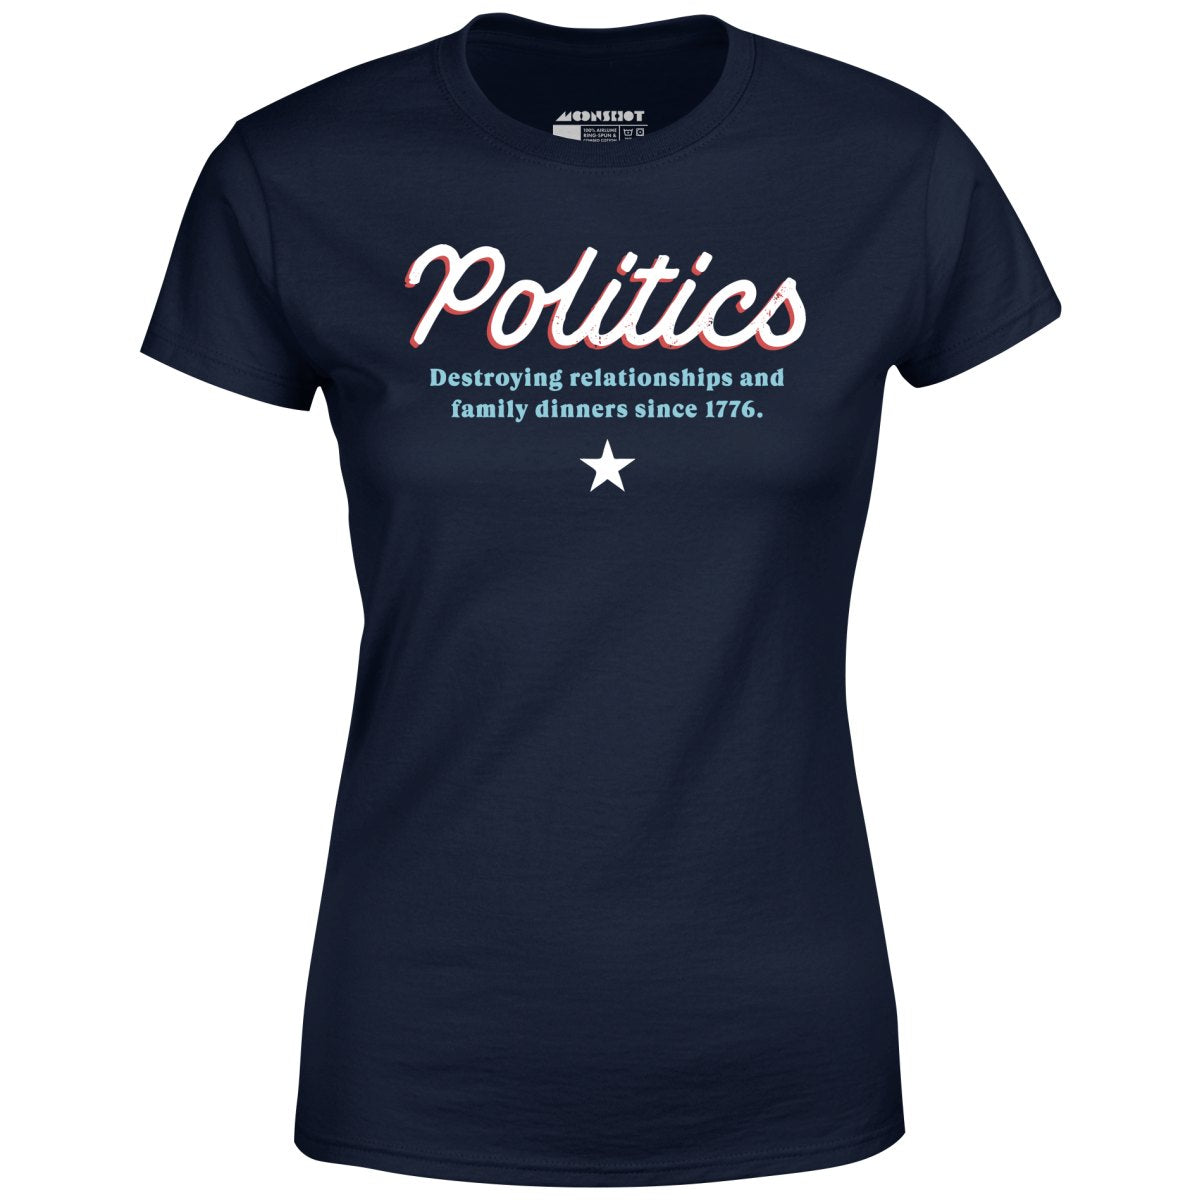 Politics - Women's T-Shirt